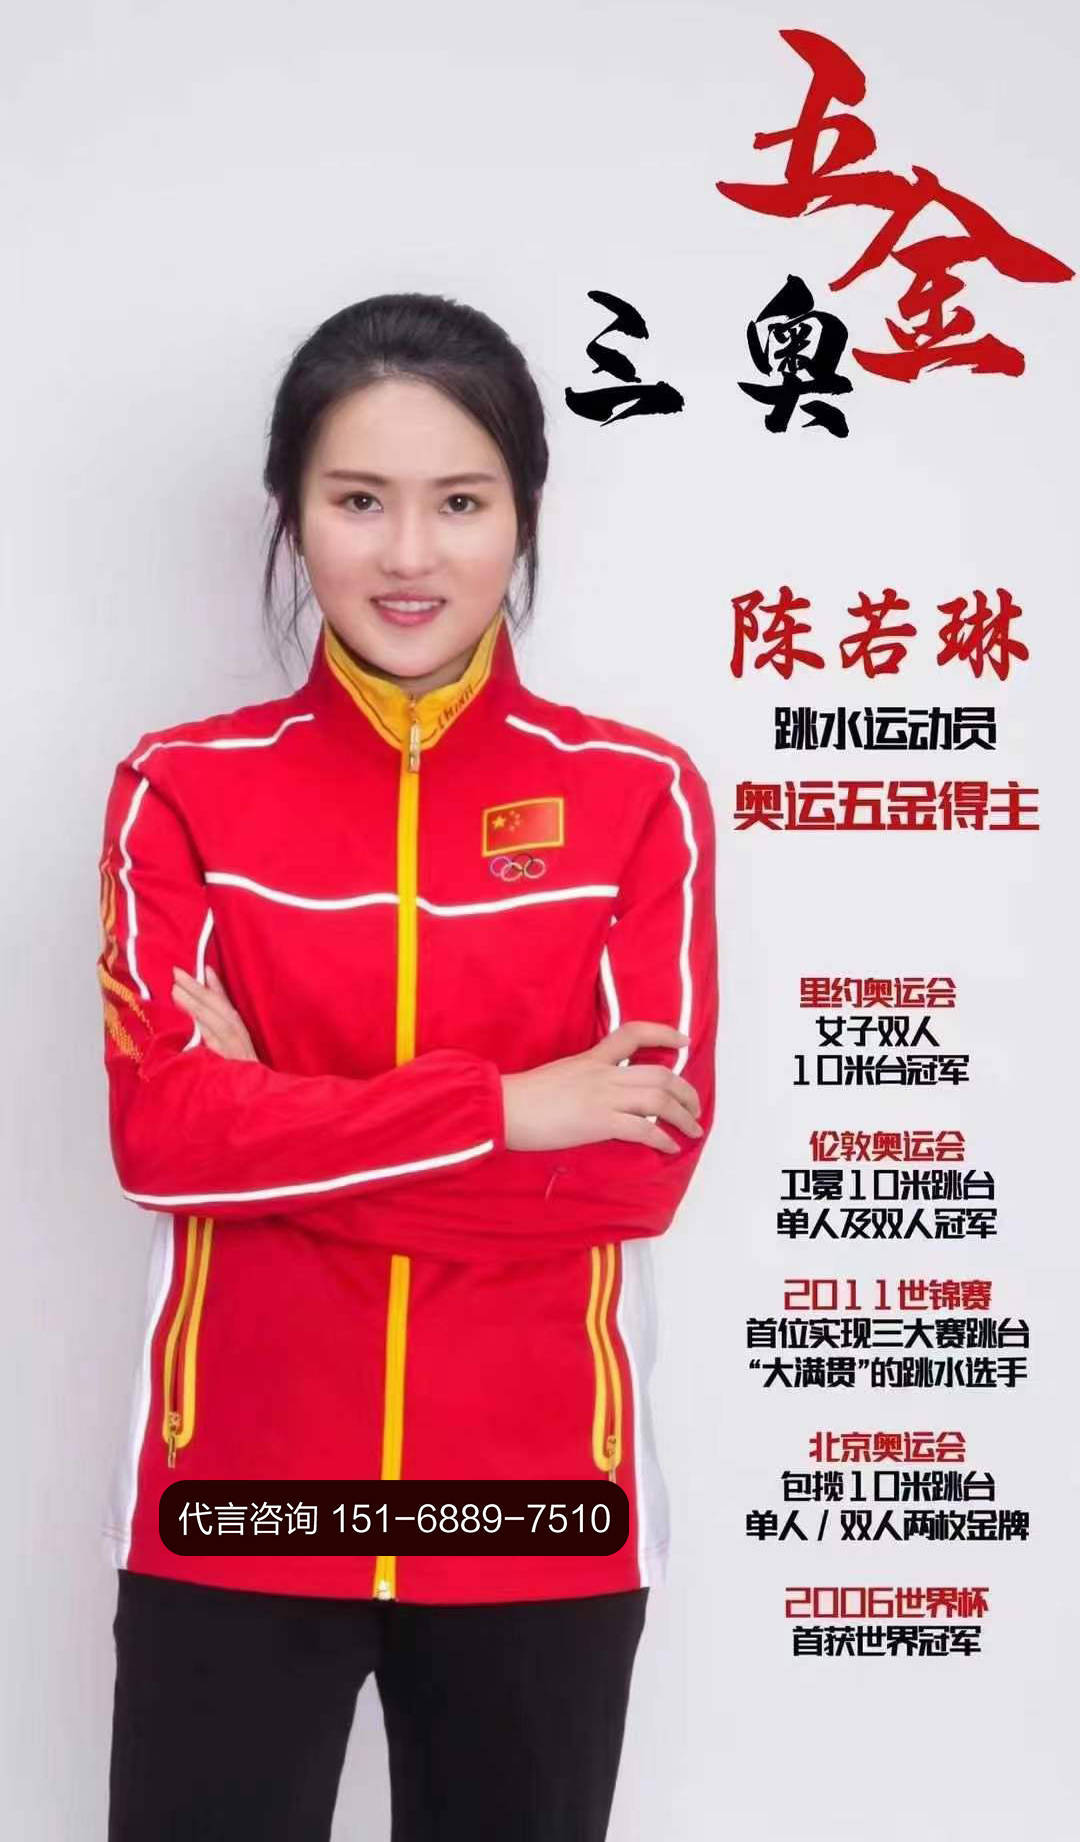 奥运跳水冠军「陈若琳」代言费公司的商务合做